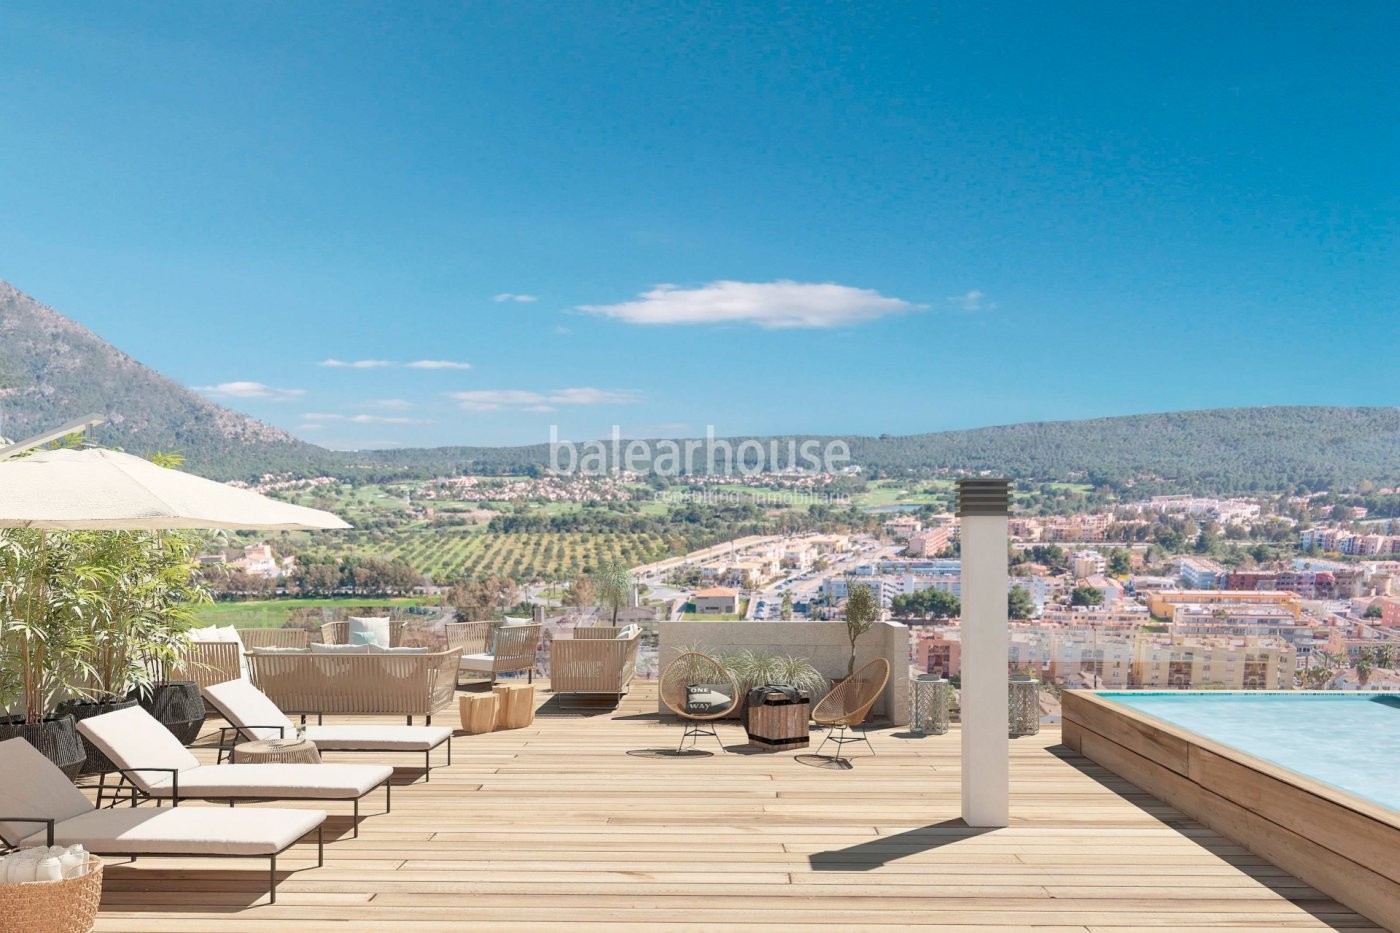 Moderne Neubauten in Santa Ponsa mit Terrassen, Garten, Swimmingpool und unverbaubarem Blick.